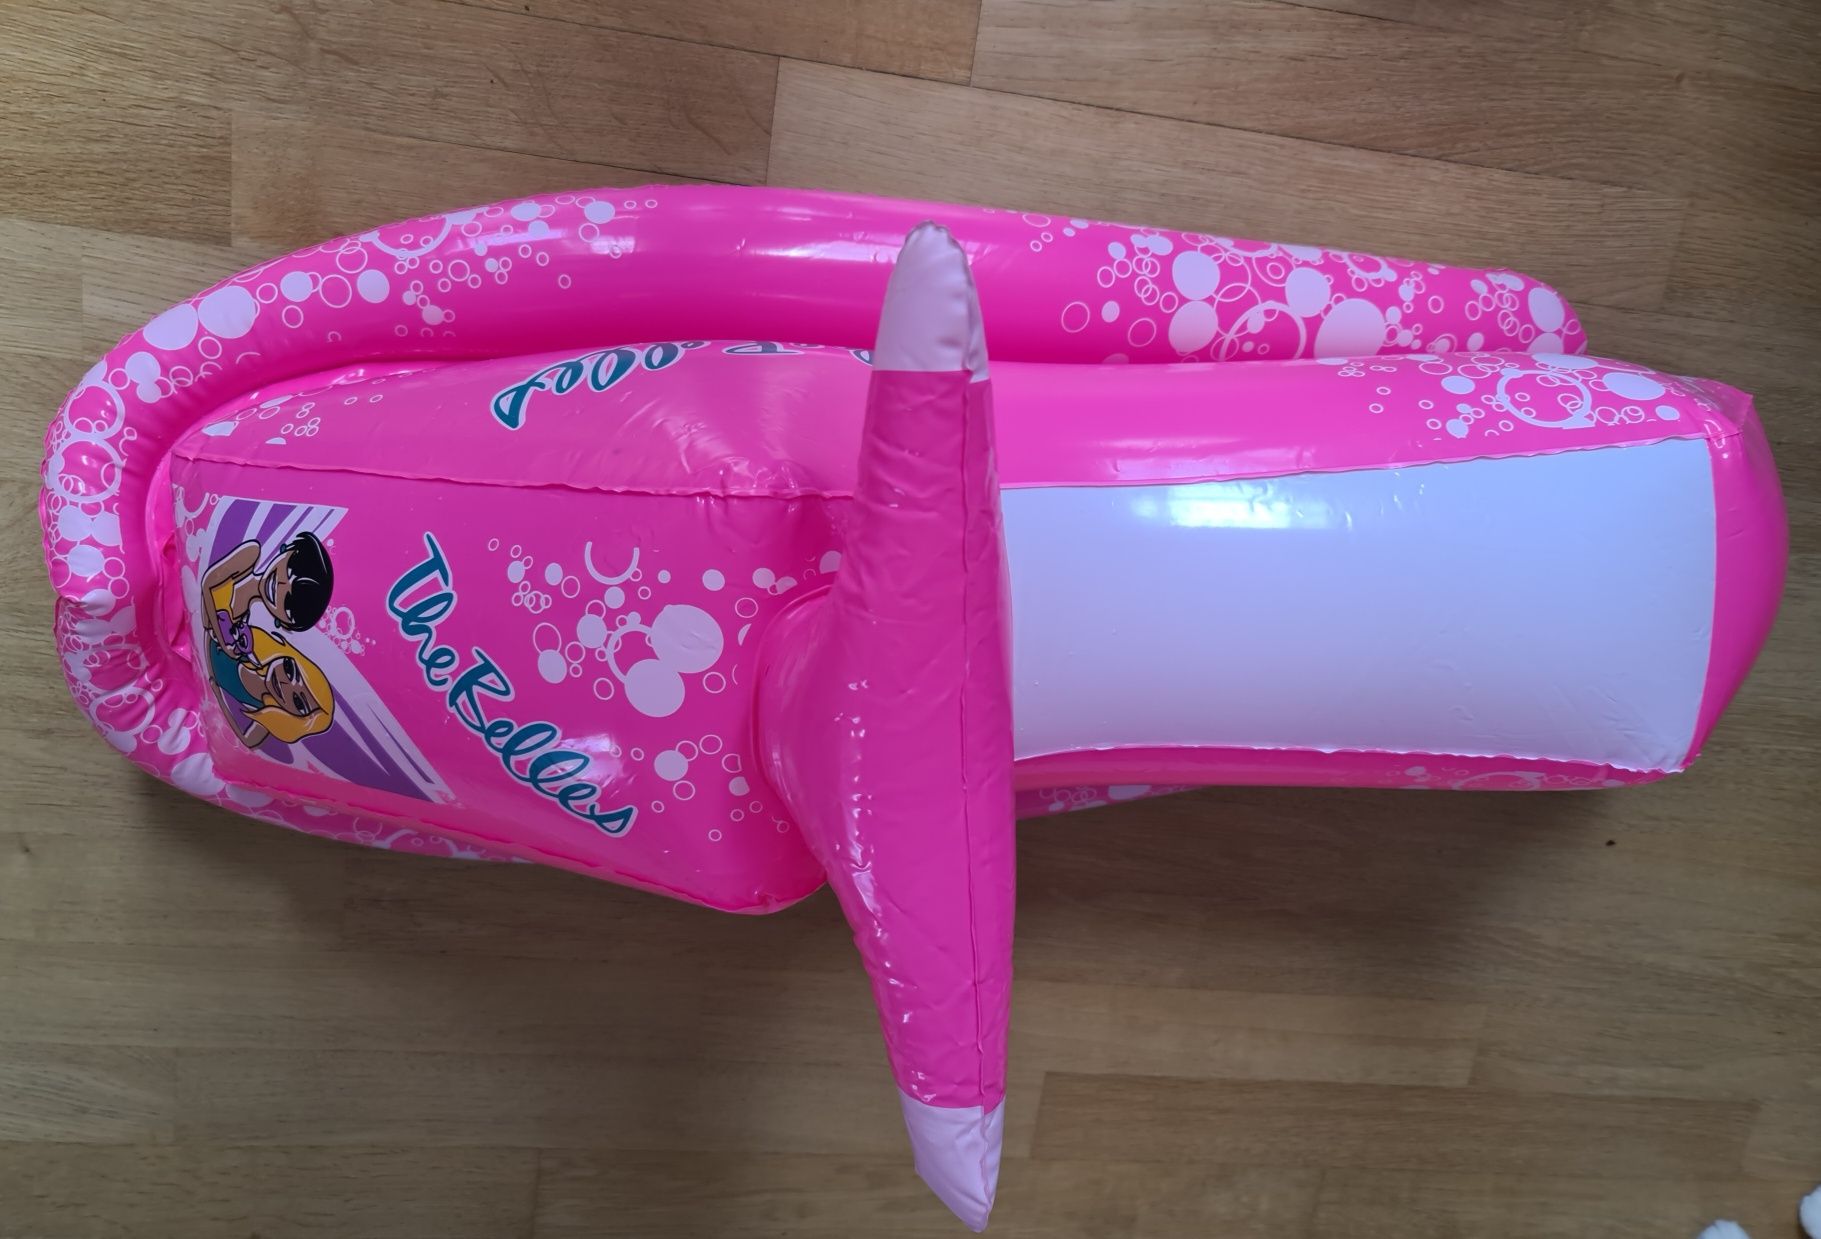 Pompowany skuter na wodę dmuchany materac zabawka dla dziecka